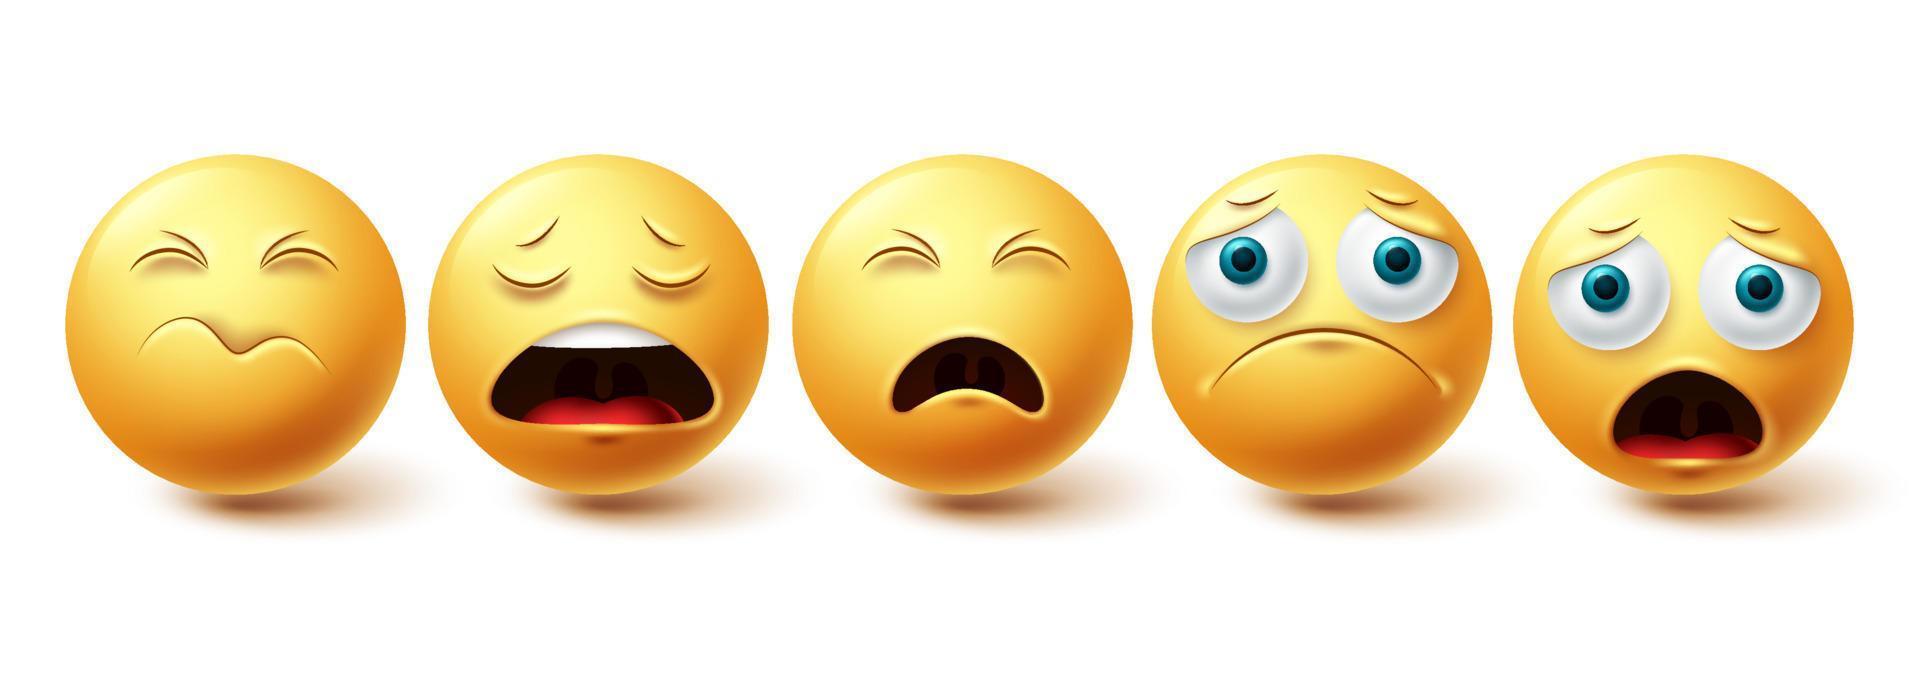 conjunto de vetores emoji triste. coleção de rostos amarelos solitários, chocados e deprimidos do emoticon isolada no fundo branco para elementos gráficos de emoji. ilustração vetorial